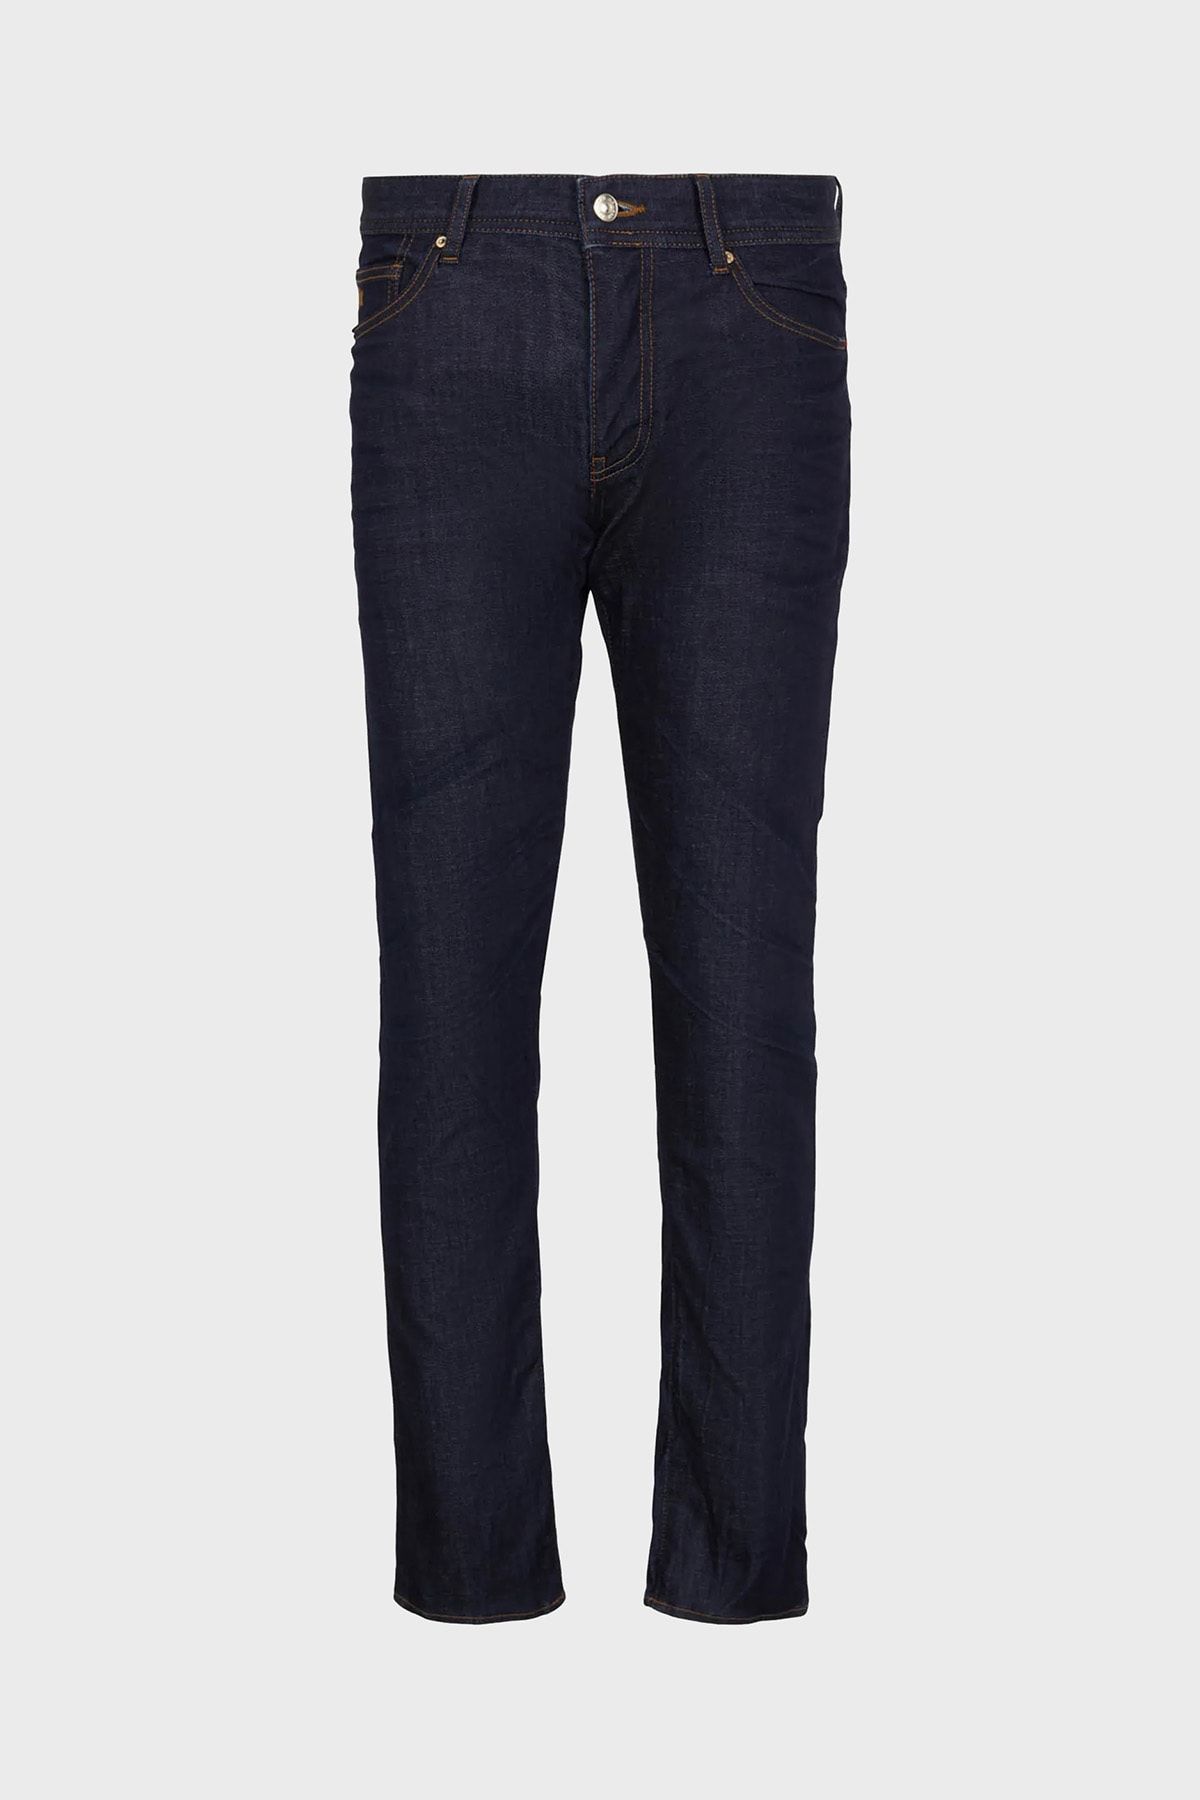 Armani Exchange Pamuklu Normal Bel Skinny Fit J14 Jeans Erkek KOT PANTOLON 6RZJ14 Z691Z 1500